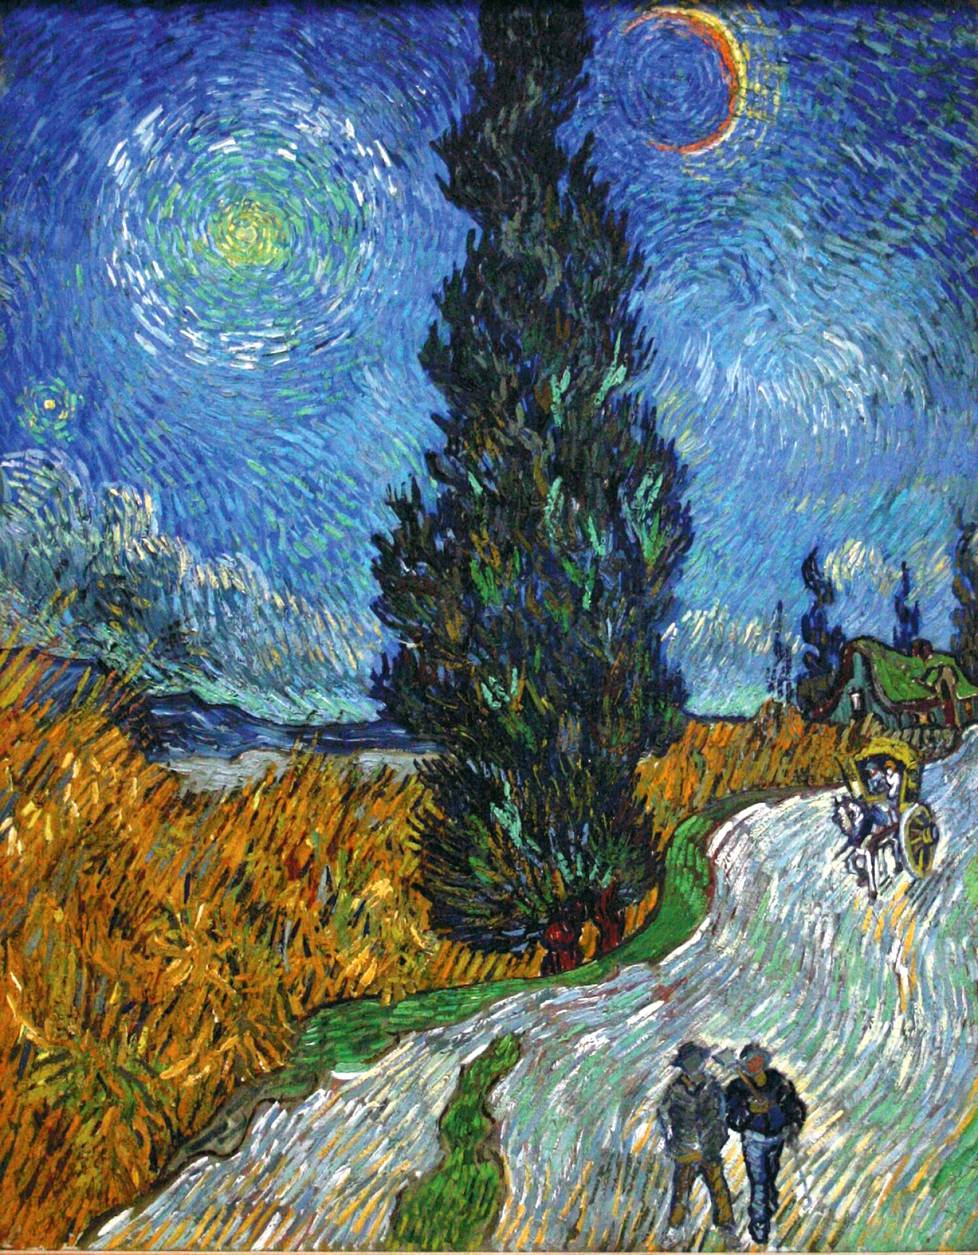 Sypressin kohdalla kirjan kuvituksena on Vincent van Goghin maalaus Maantie Provencessa yöllä (1890) ja kuvateksti kertoo van Goghin maalanneen useita teoksia sypresseistä ja kirjoittaneen veljelleen sypressien olevan koko ajan hänen ajatuksissaan. Van Goghin mielestä sypressit olivat kaikessa linjakkuudessaan yhtä kauniita kuin Egyptin obeliskit.